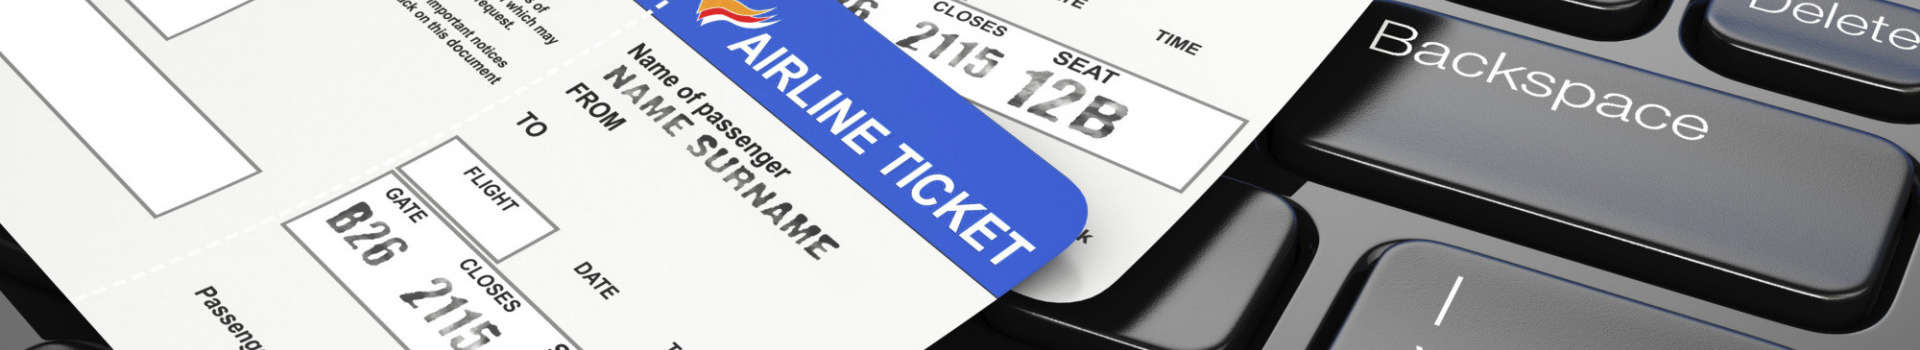 Cách kiểm tra mã đặt chỗ (code) vé máy bay theo hãng đã mua